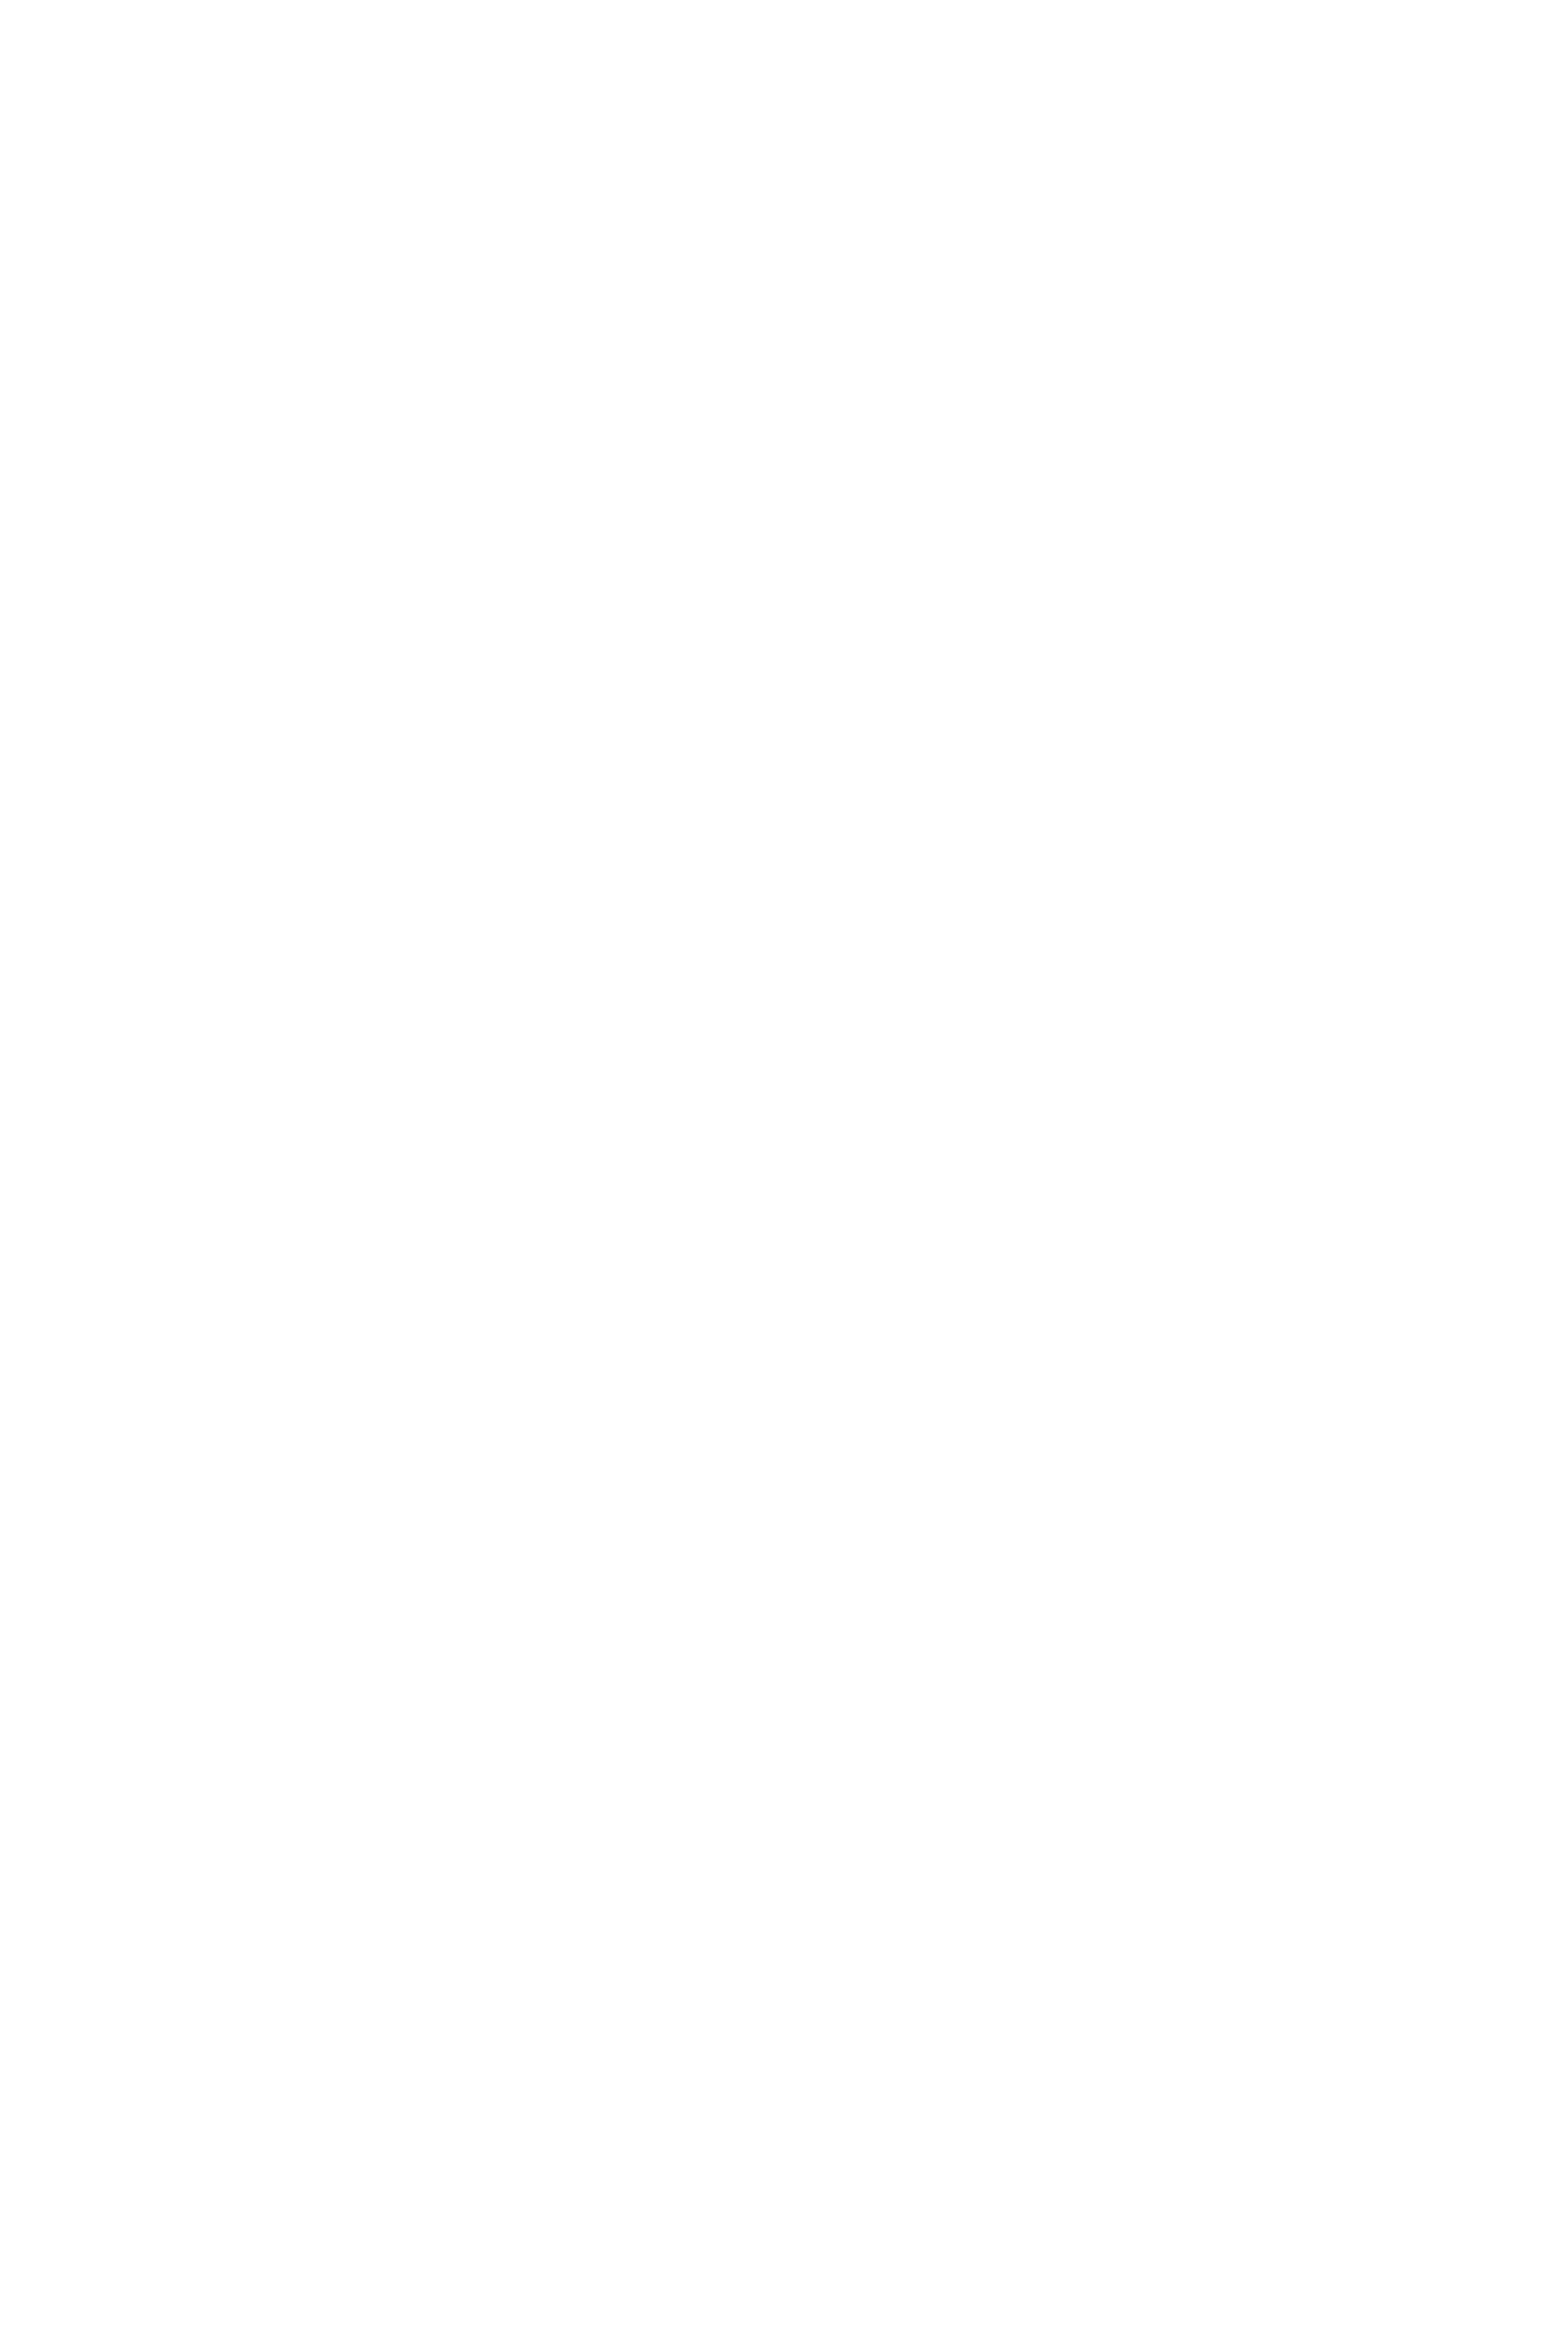 Красил Макар, Фотосинтез, 2020 холст, масло, 60 х 90 см